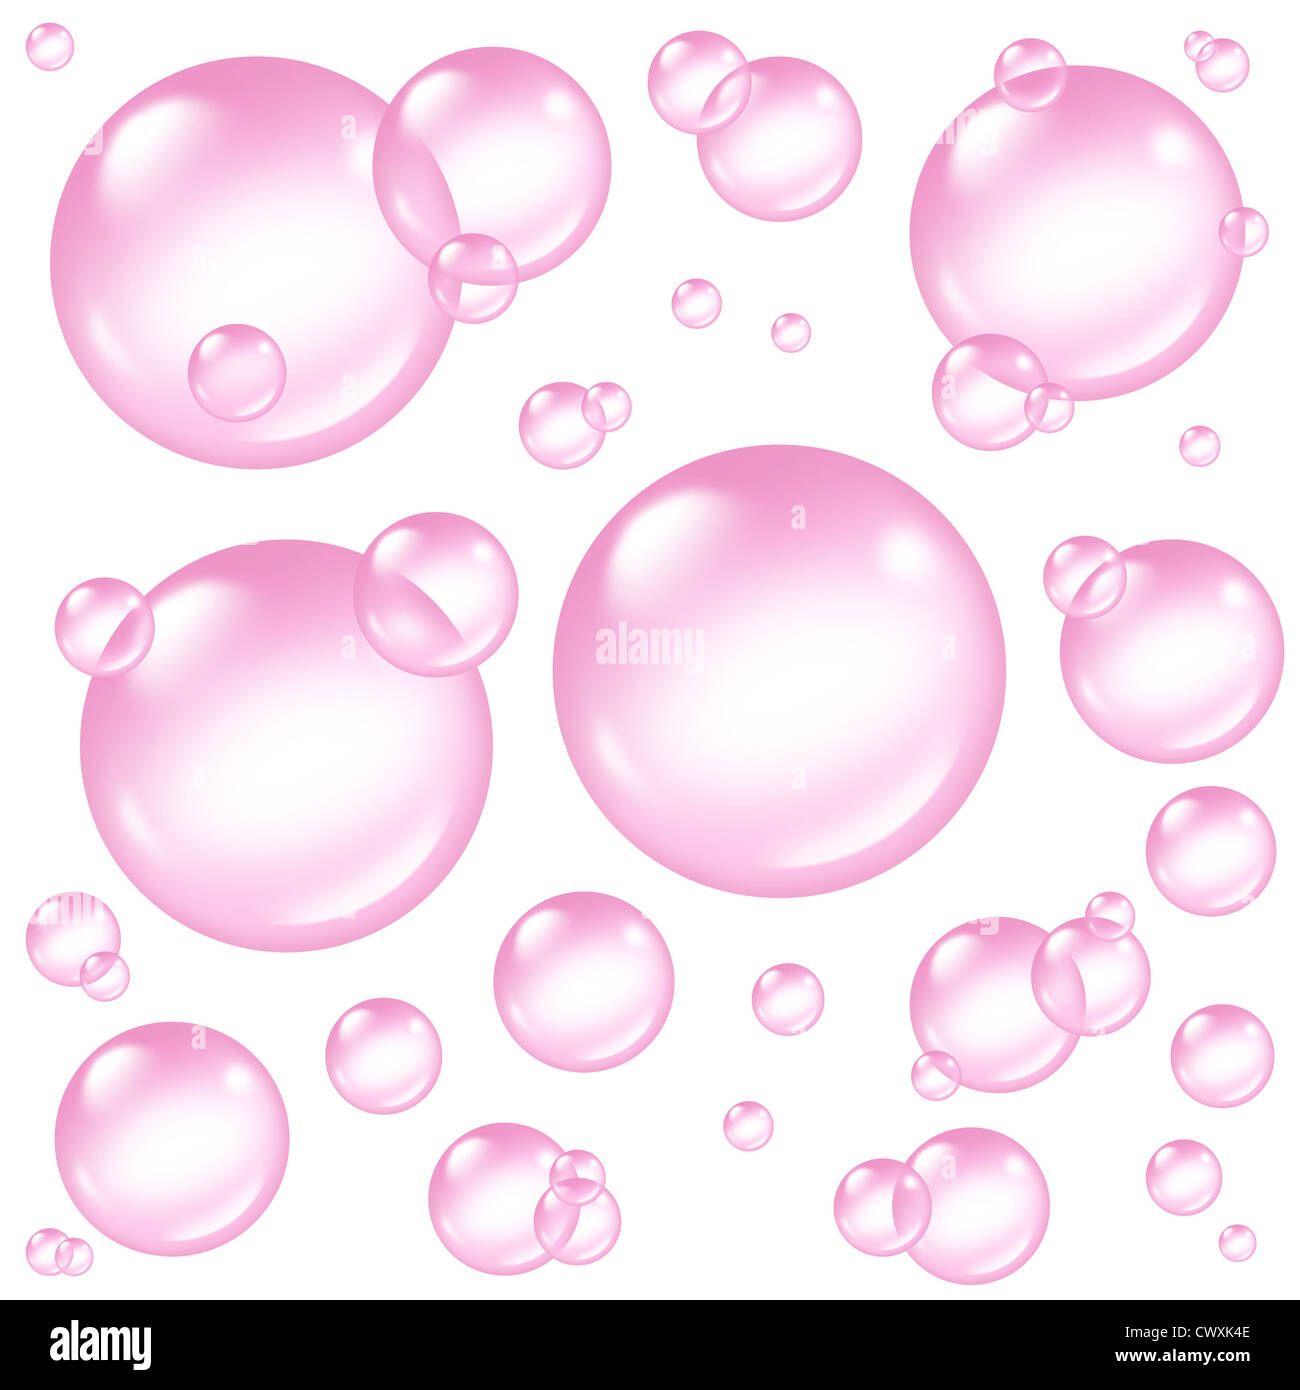 Bolle di rosa gli elementi di design come sfere isolate e delicato dolce trasparente soap bubble sud composizione con schiuma in molti formati circolari floating come pulire i simboli rosato di lavaggio di freschezza. Foto Stock